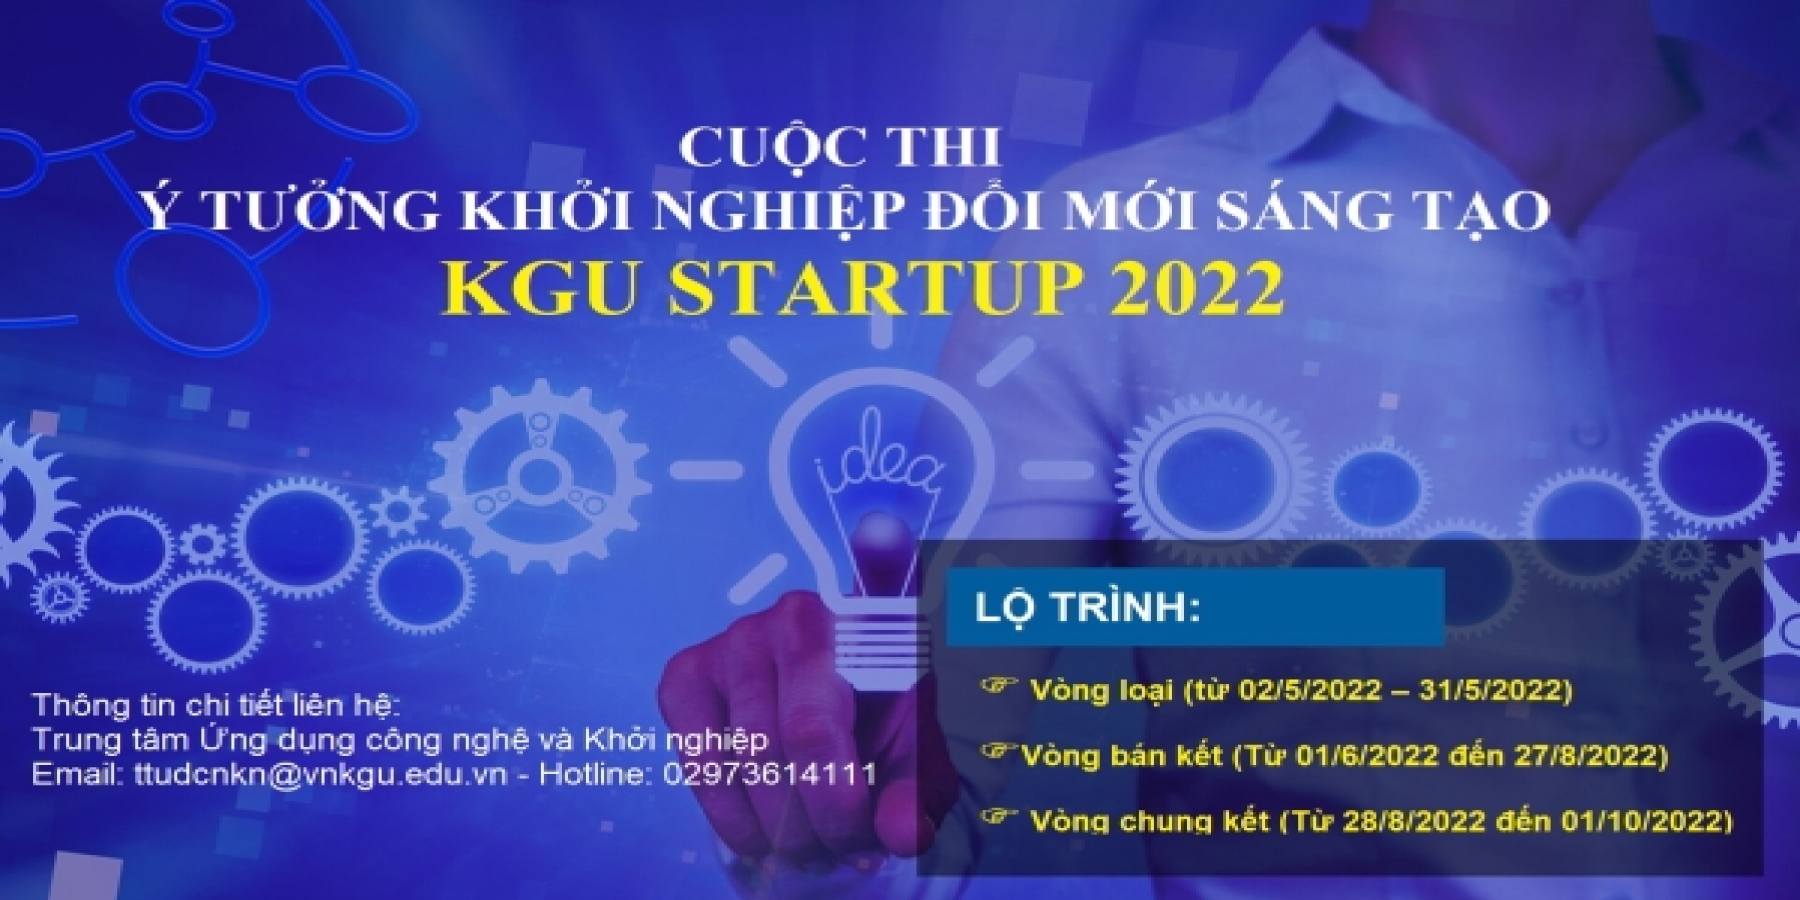 Cuộc thi Ý tưởng khởi nghiệp đổi mới sáng tạo KGU STARTUP 2022